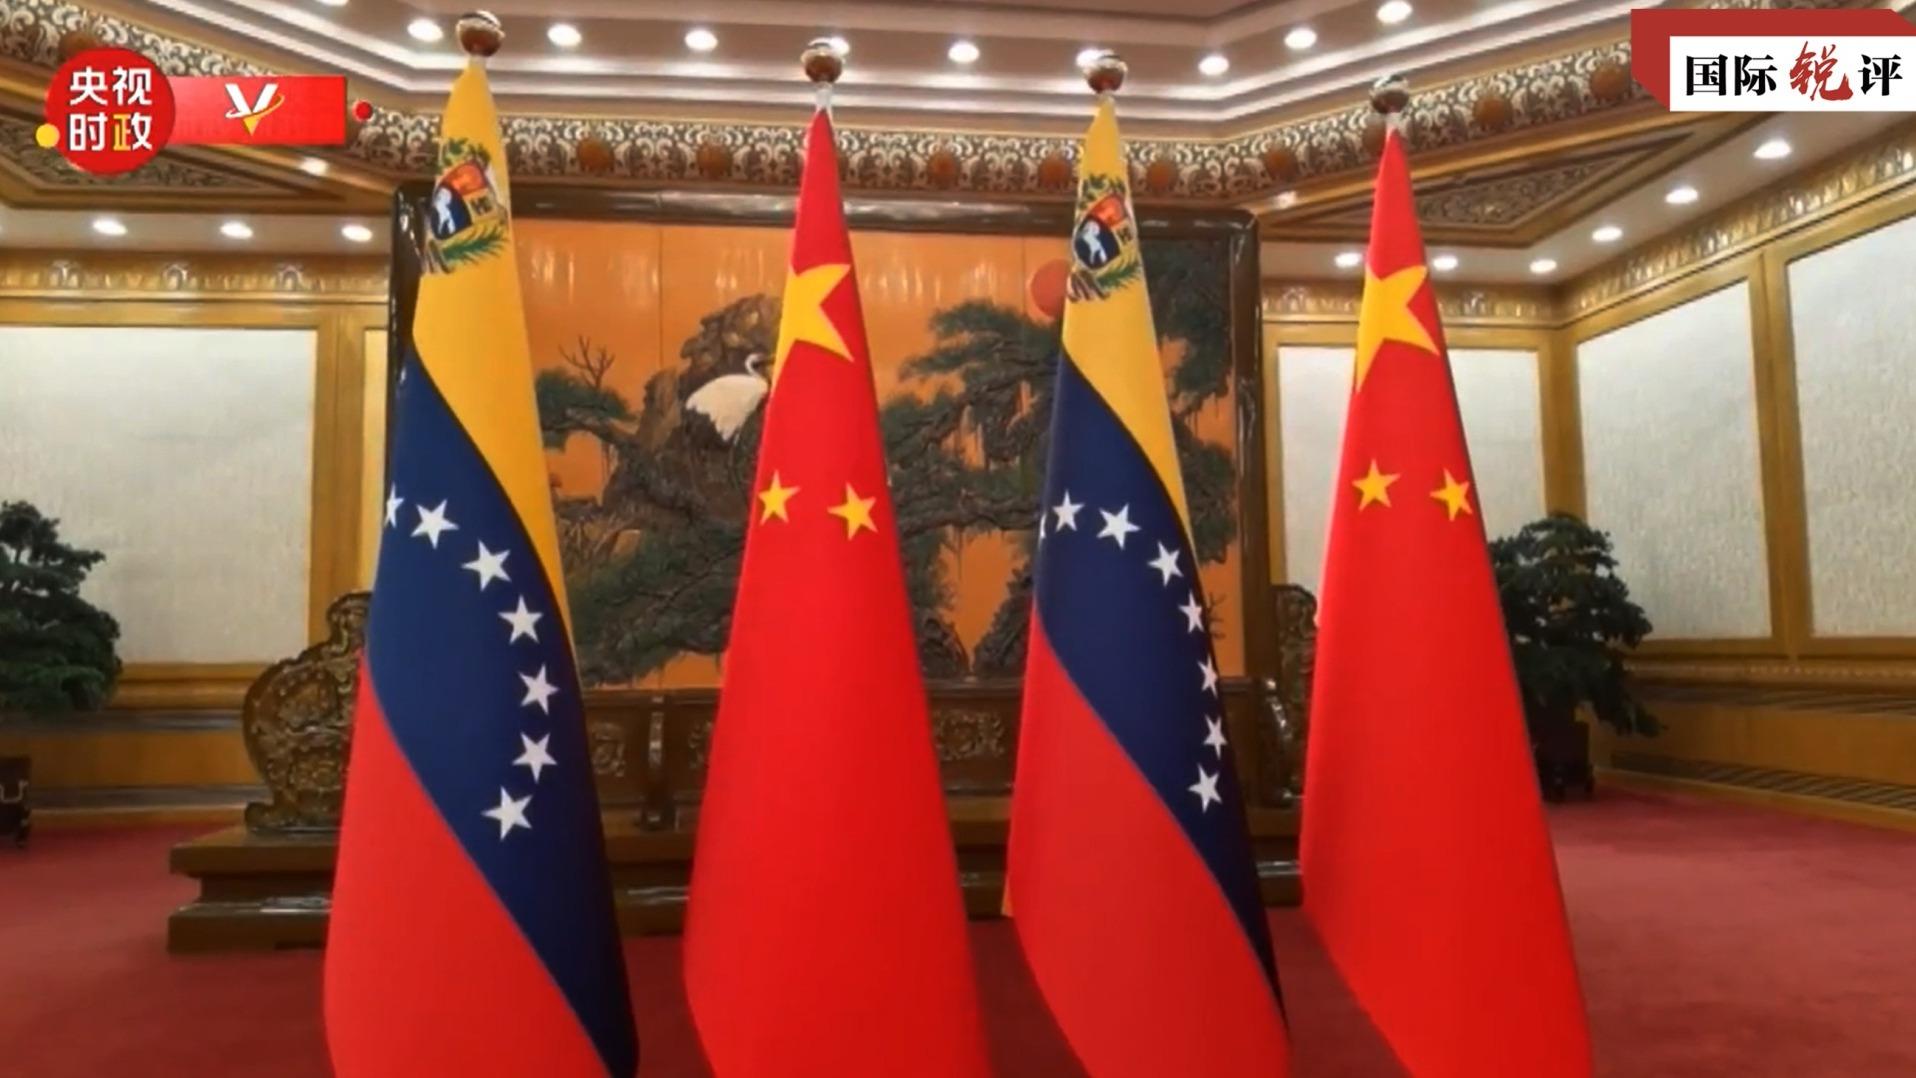 En todos los casos, la asociación estratégica entre China y Venezuela se ajusta a las expectativas comunes de los dos pueblos y a la tendencia general de la época.